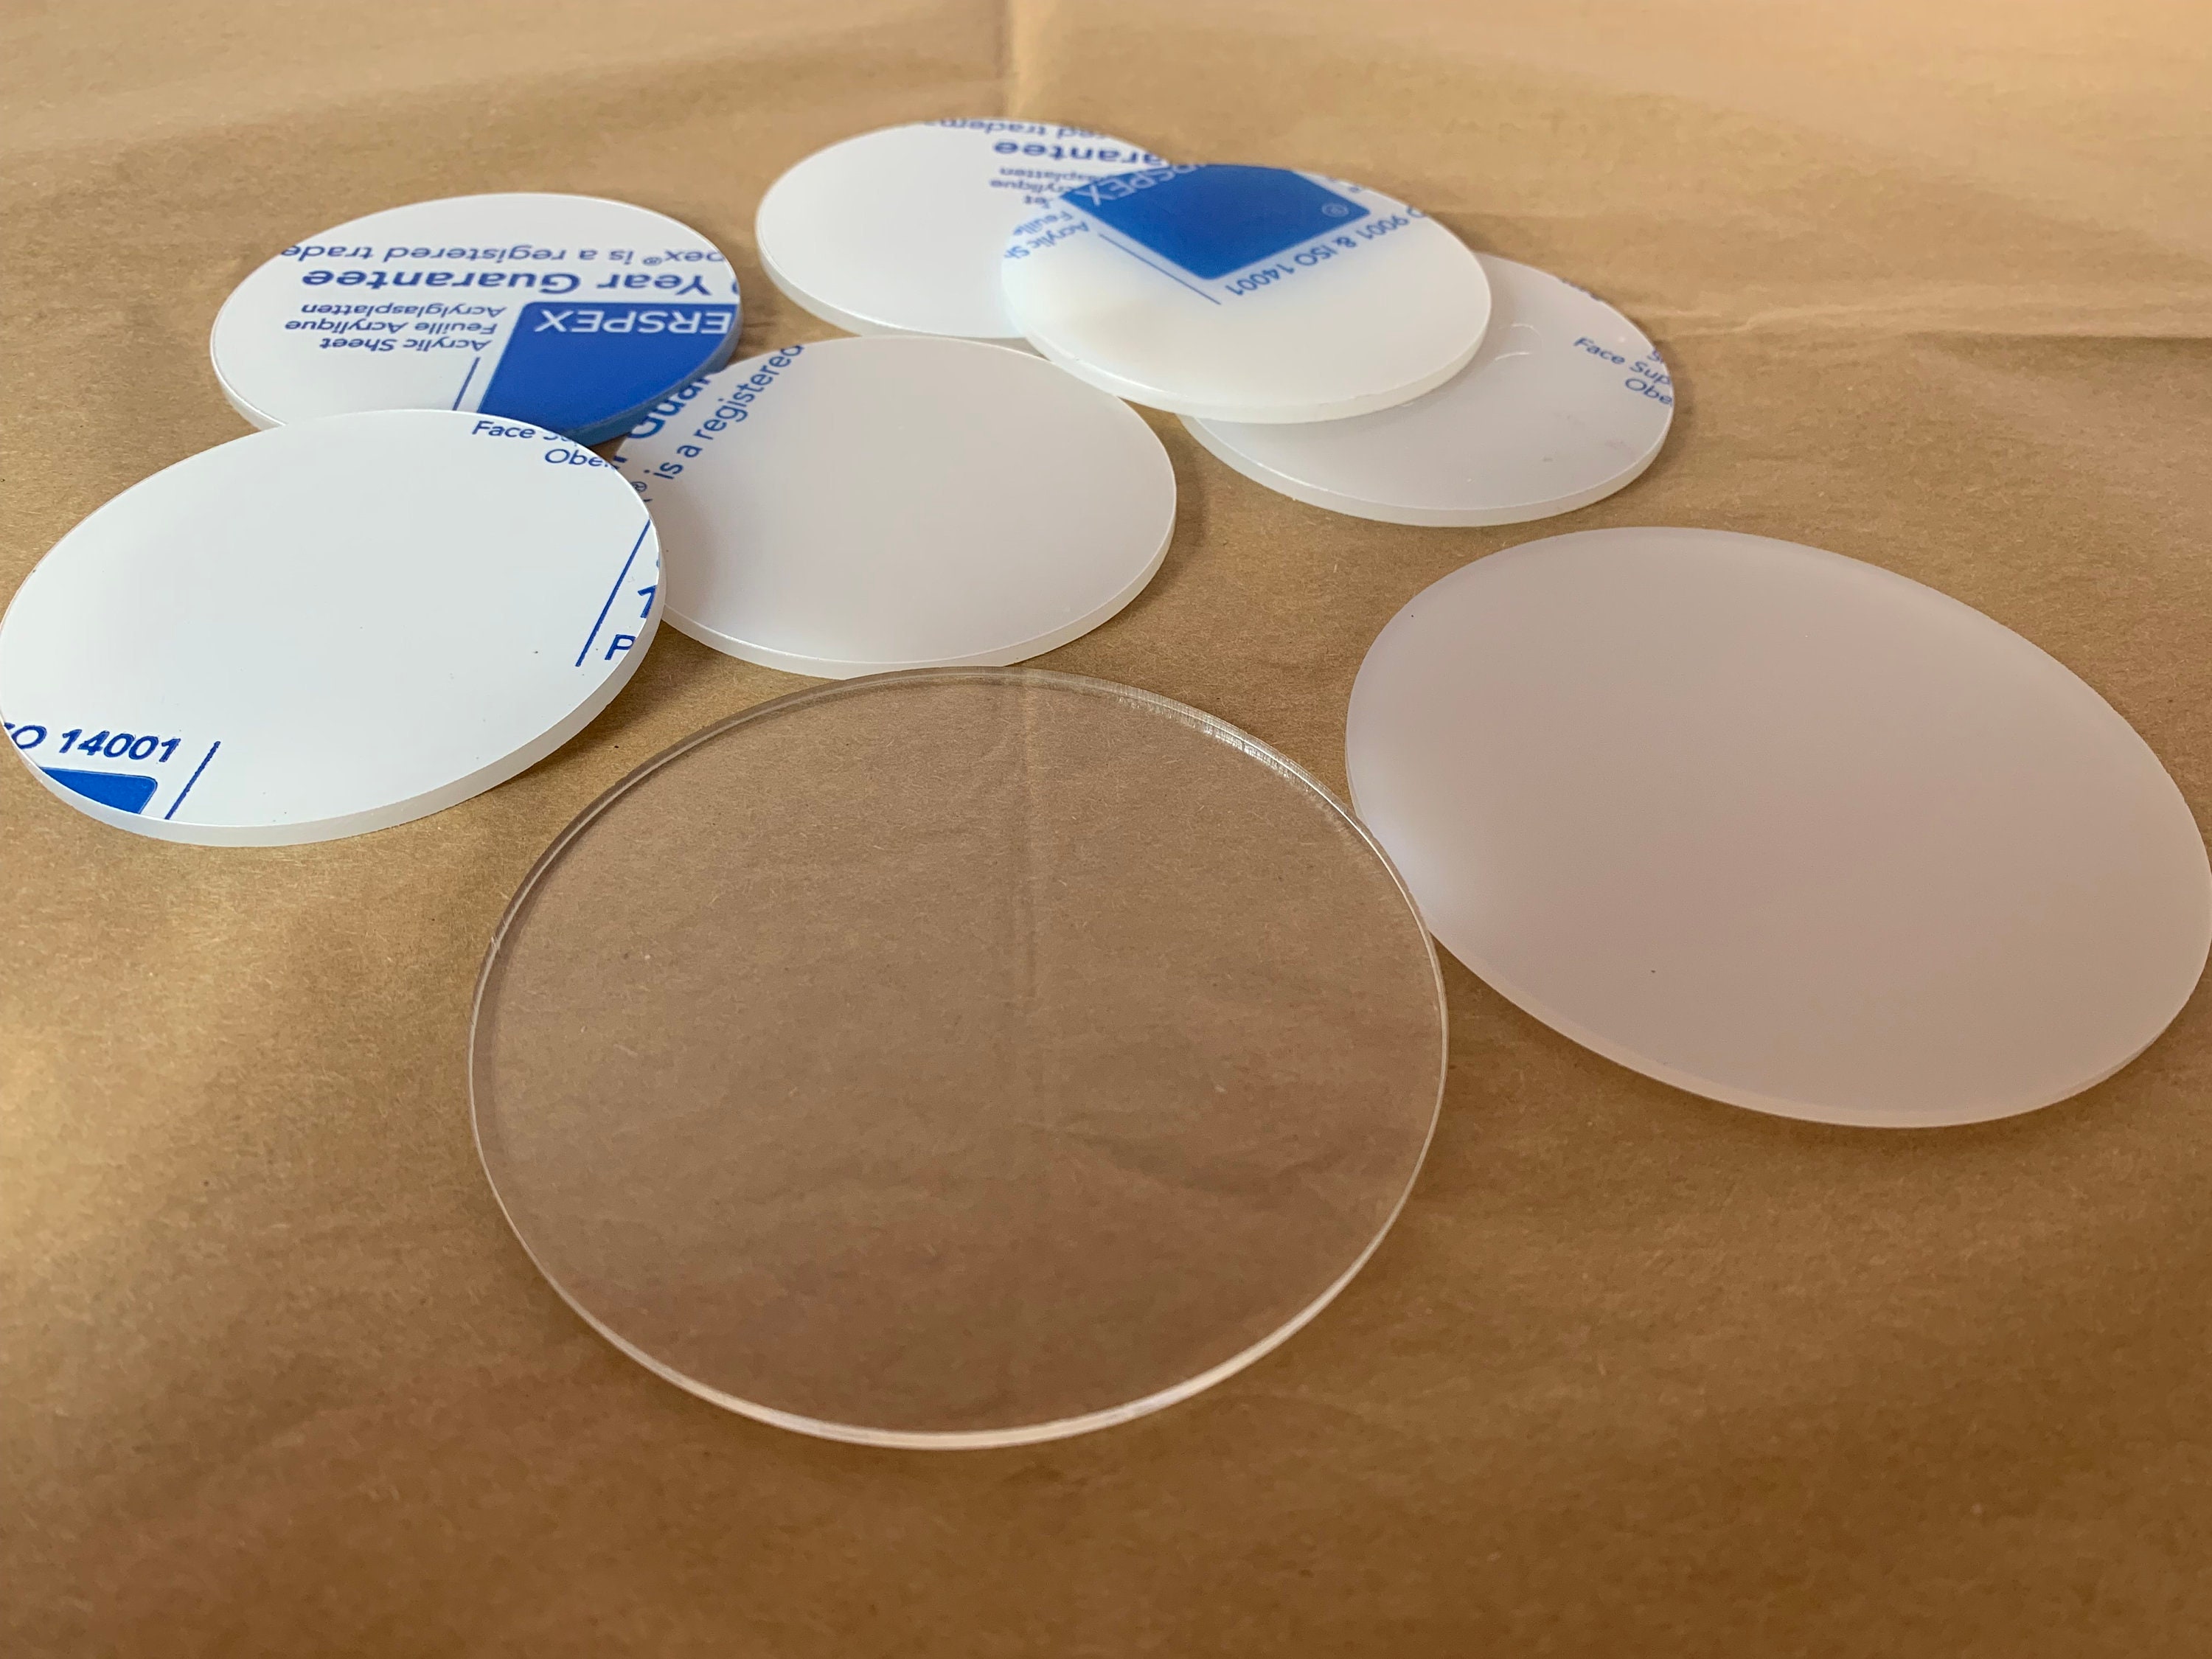 Cercle acrylique vierge / Acrylique clair /Cercles acryliques unis